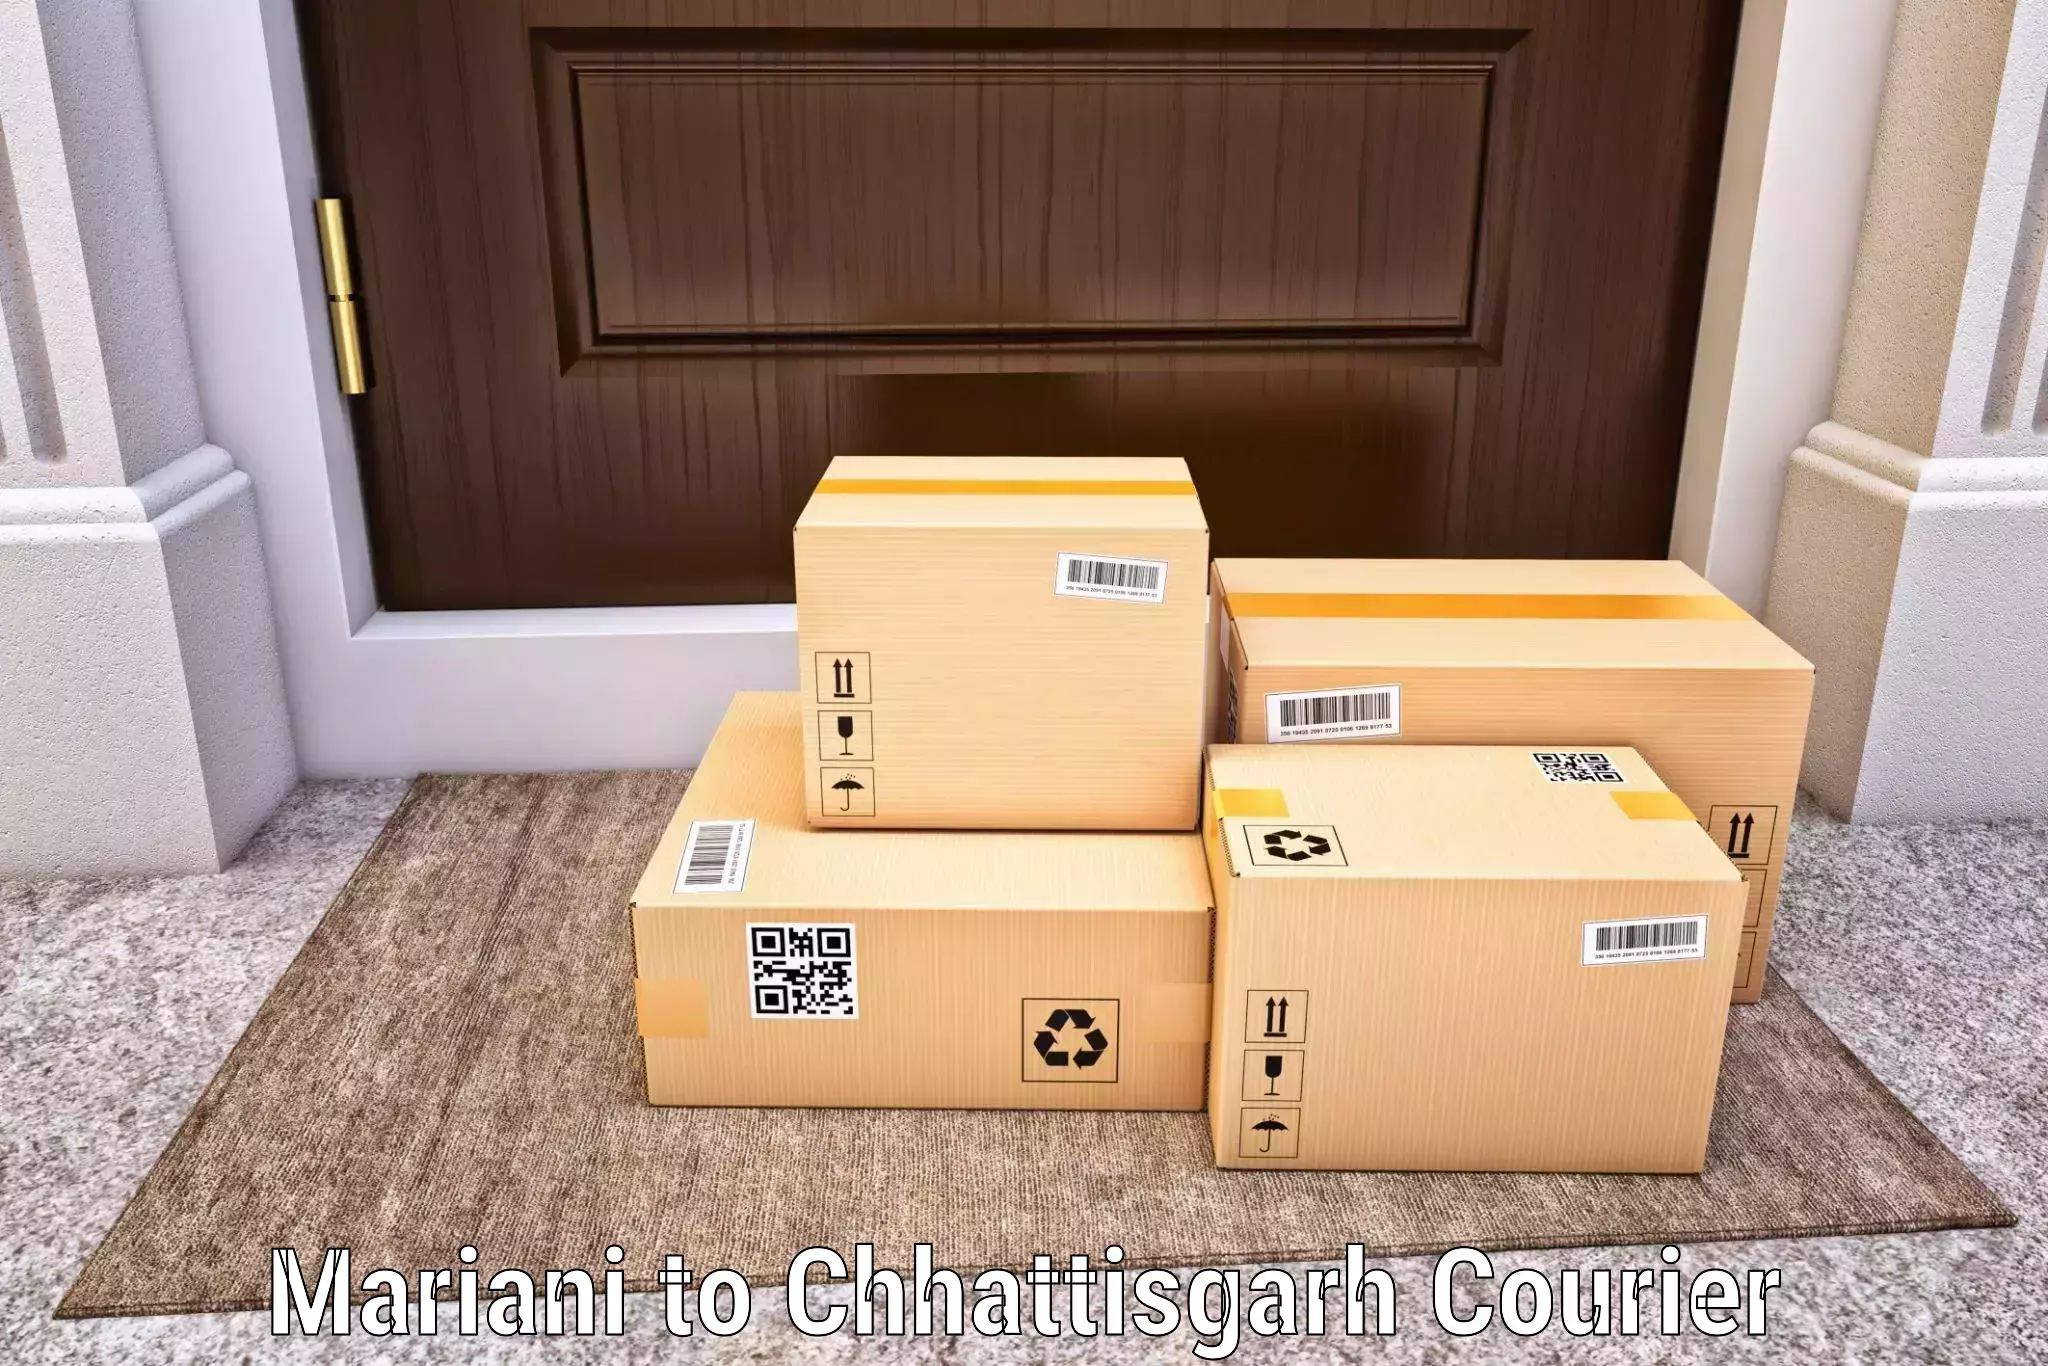 Express courier capabilities Mariani to Pandariya